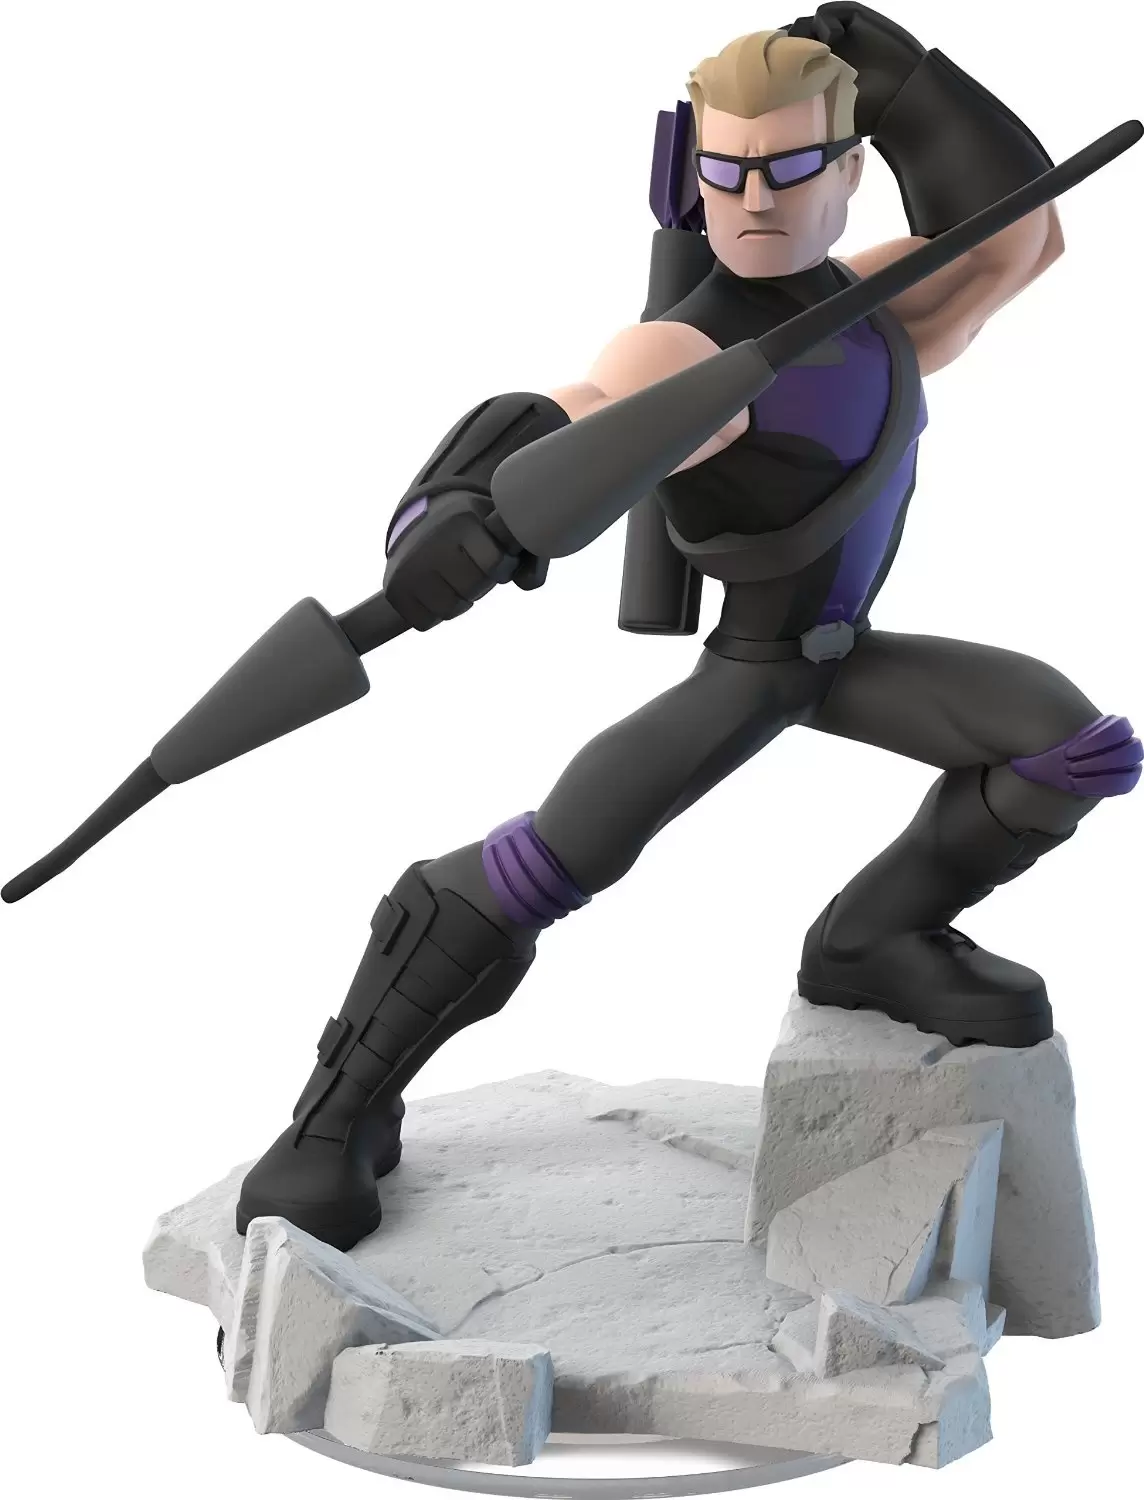 Disney Infinity Action figures - Hawkeye